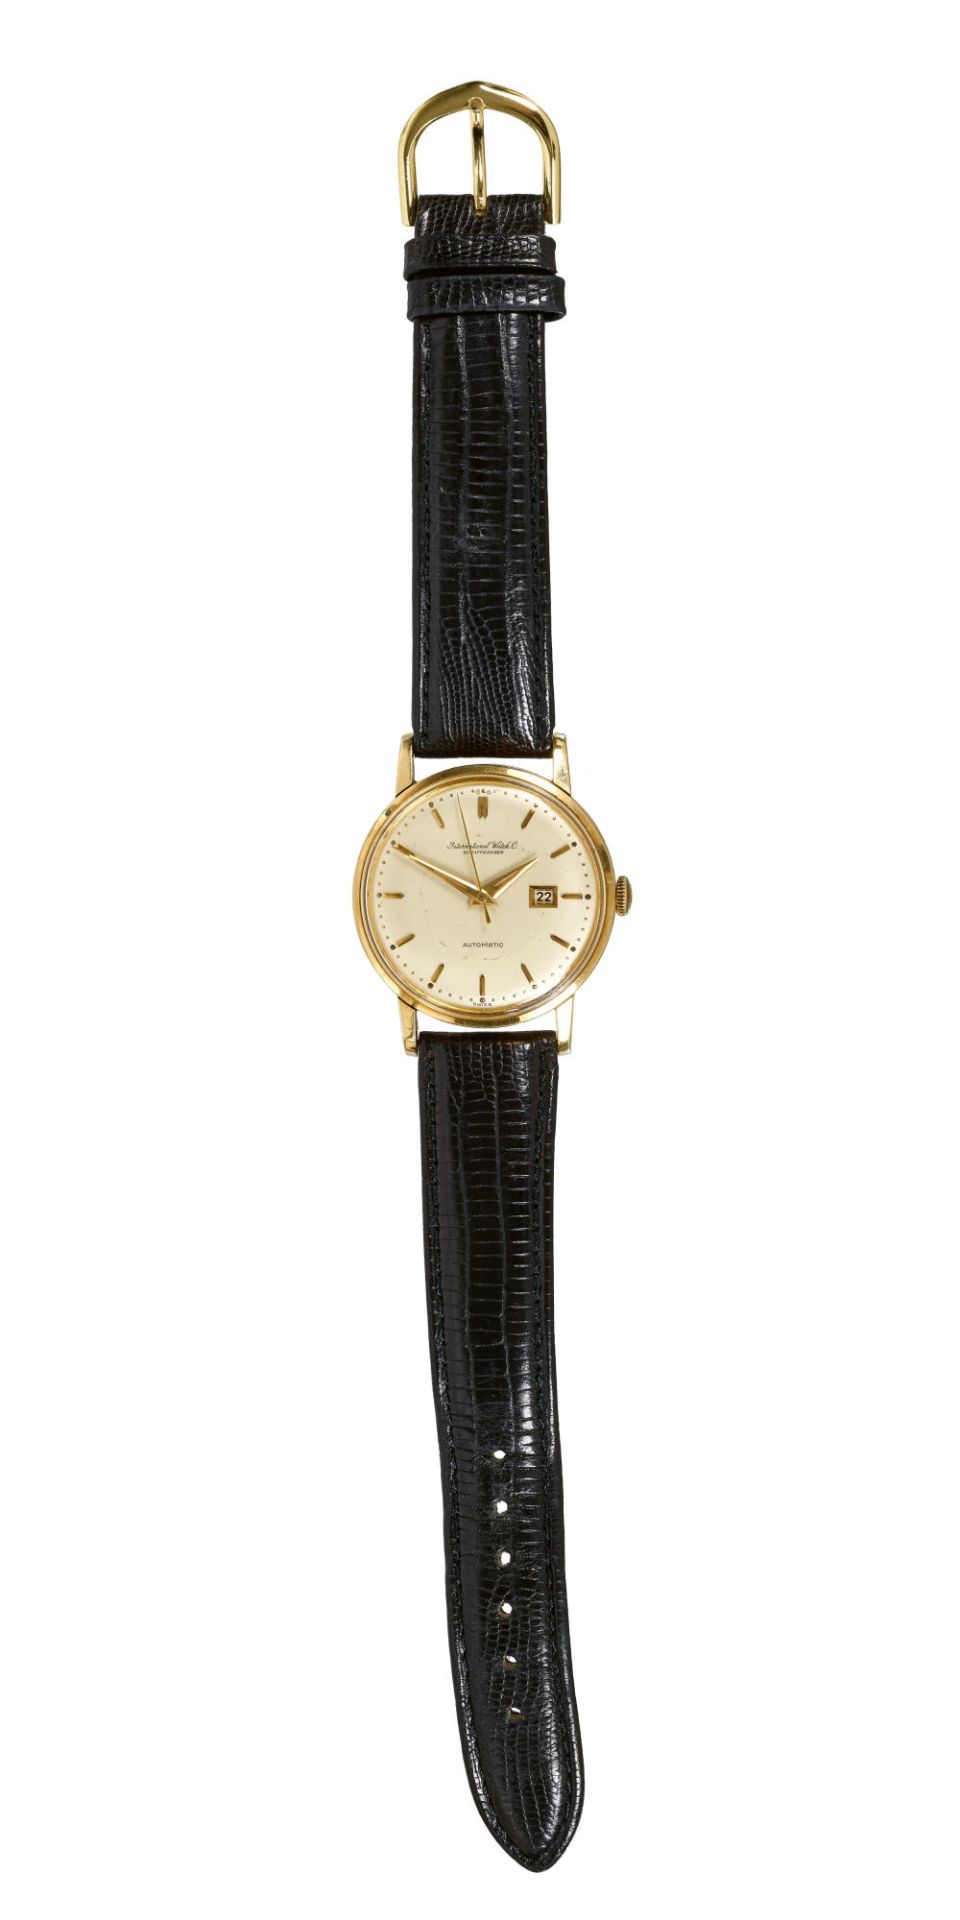 IWC: Vintage-Herrenarmbanduhr. / IWC, Vintage-gentleman's wristwatch. - Bild 3 aus 3